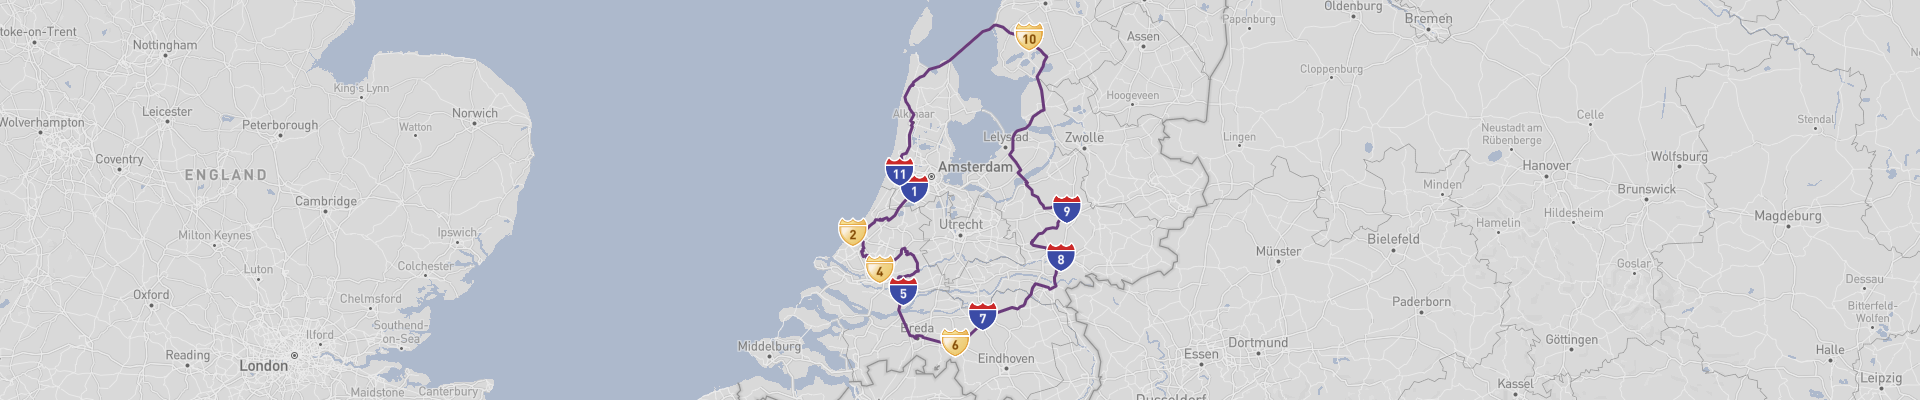 Itinéraire Netherlands 